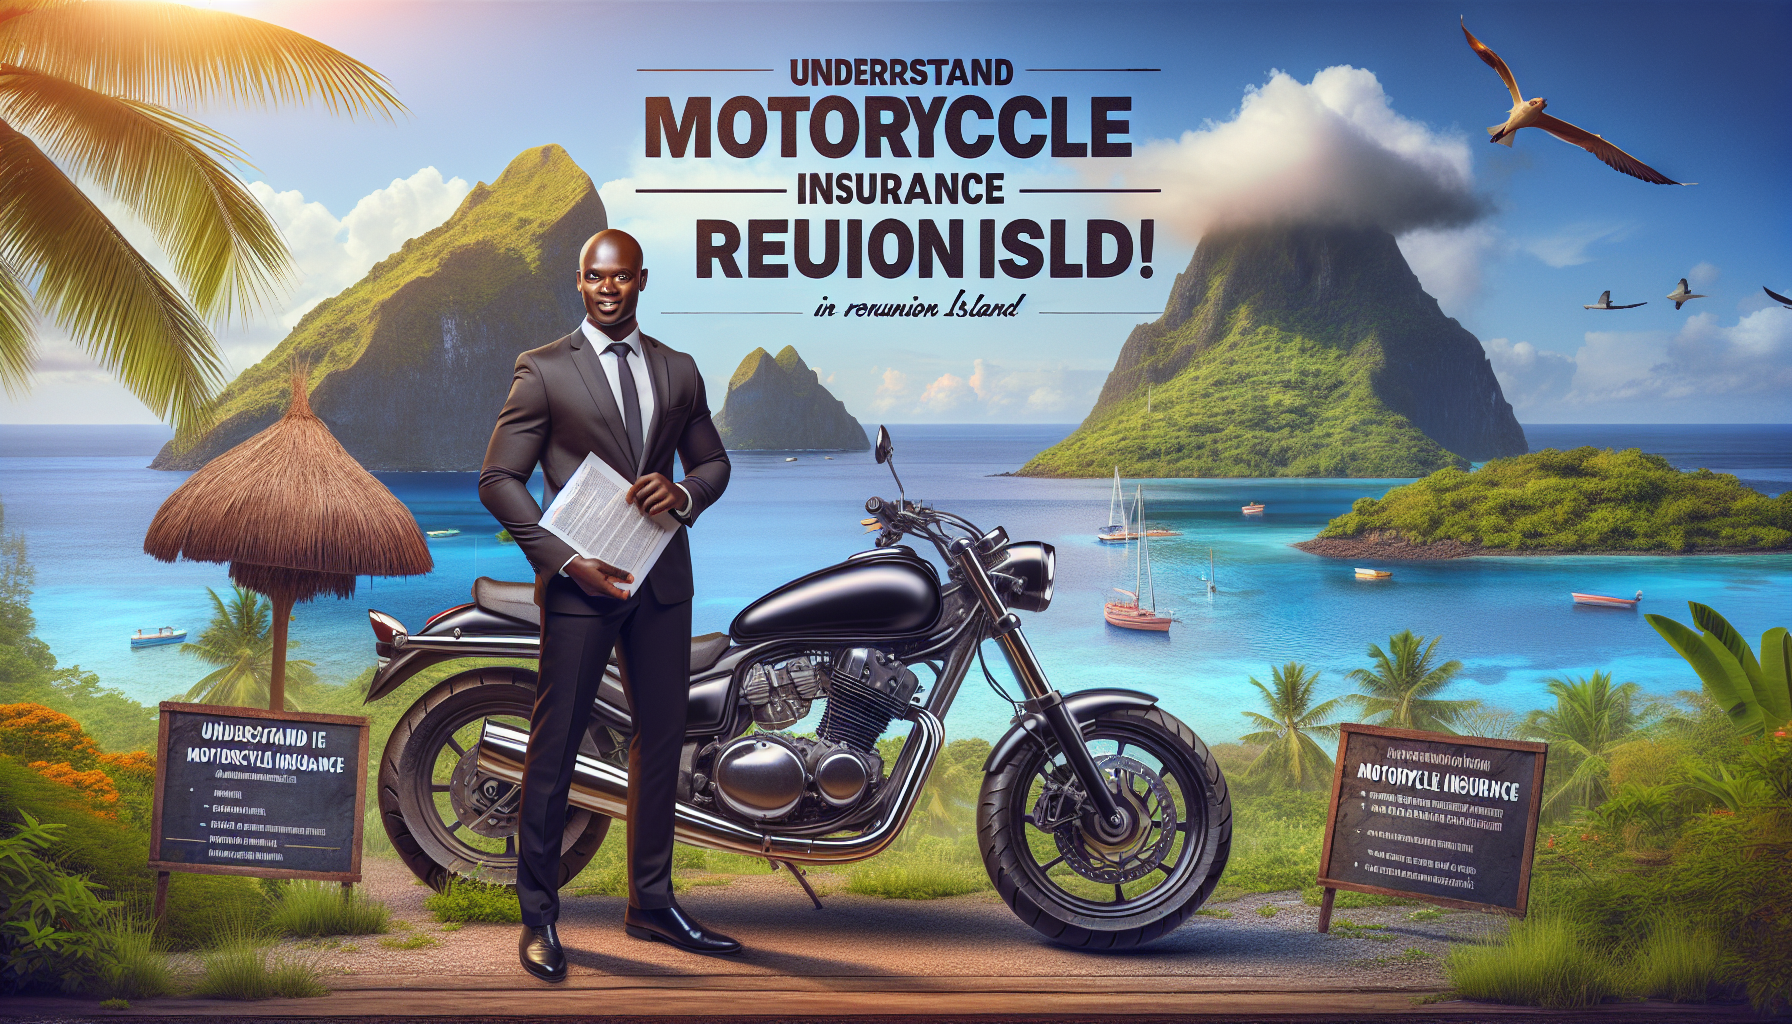 assurance moto la réunion : trouvez une assurance moto adaptée à la réunion pour rouler en toute sécurité sous le soleil des îles.